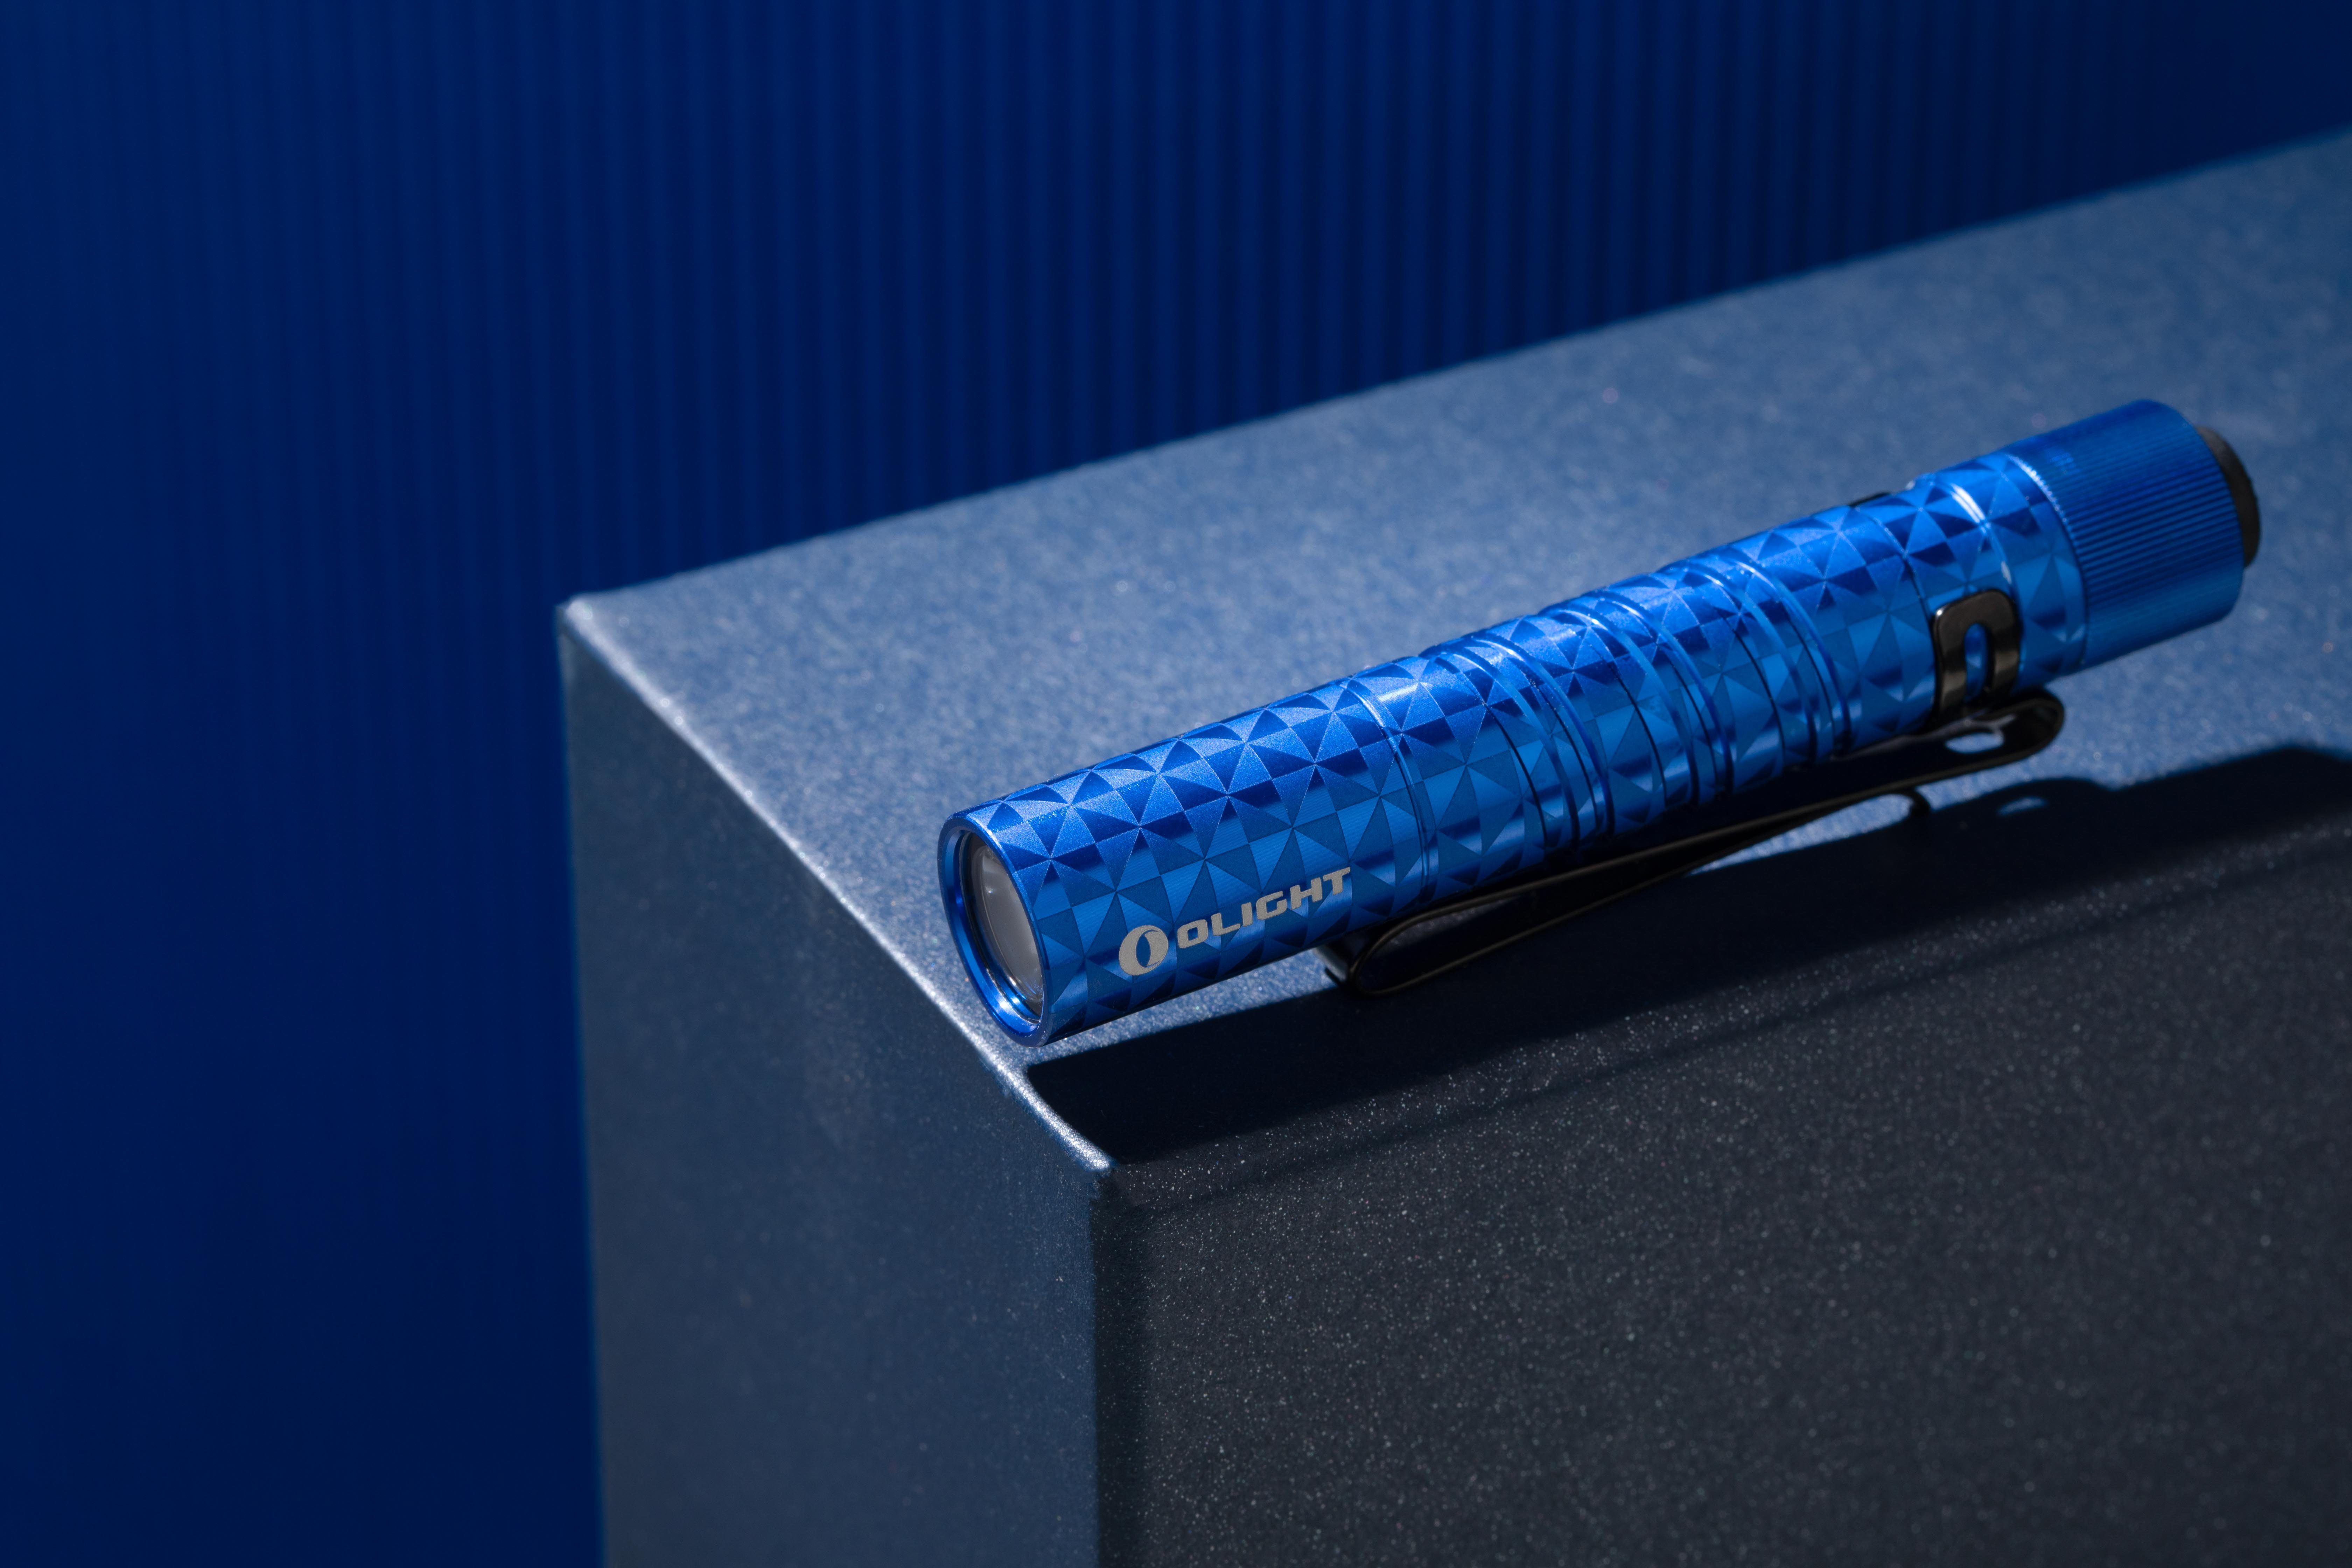 66m EOS I3T Blau Schlüsselbund Taschenlampe Pinwheel LED Reichweite OLIGHT Taschenlampe 180 Lumen Mini